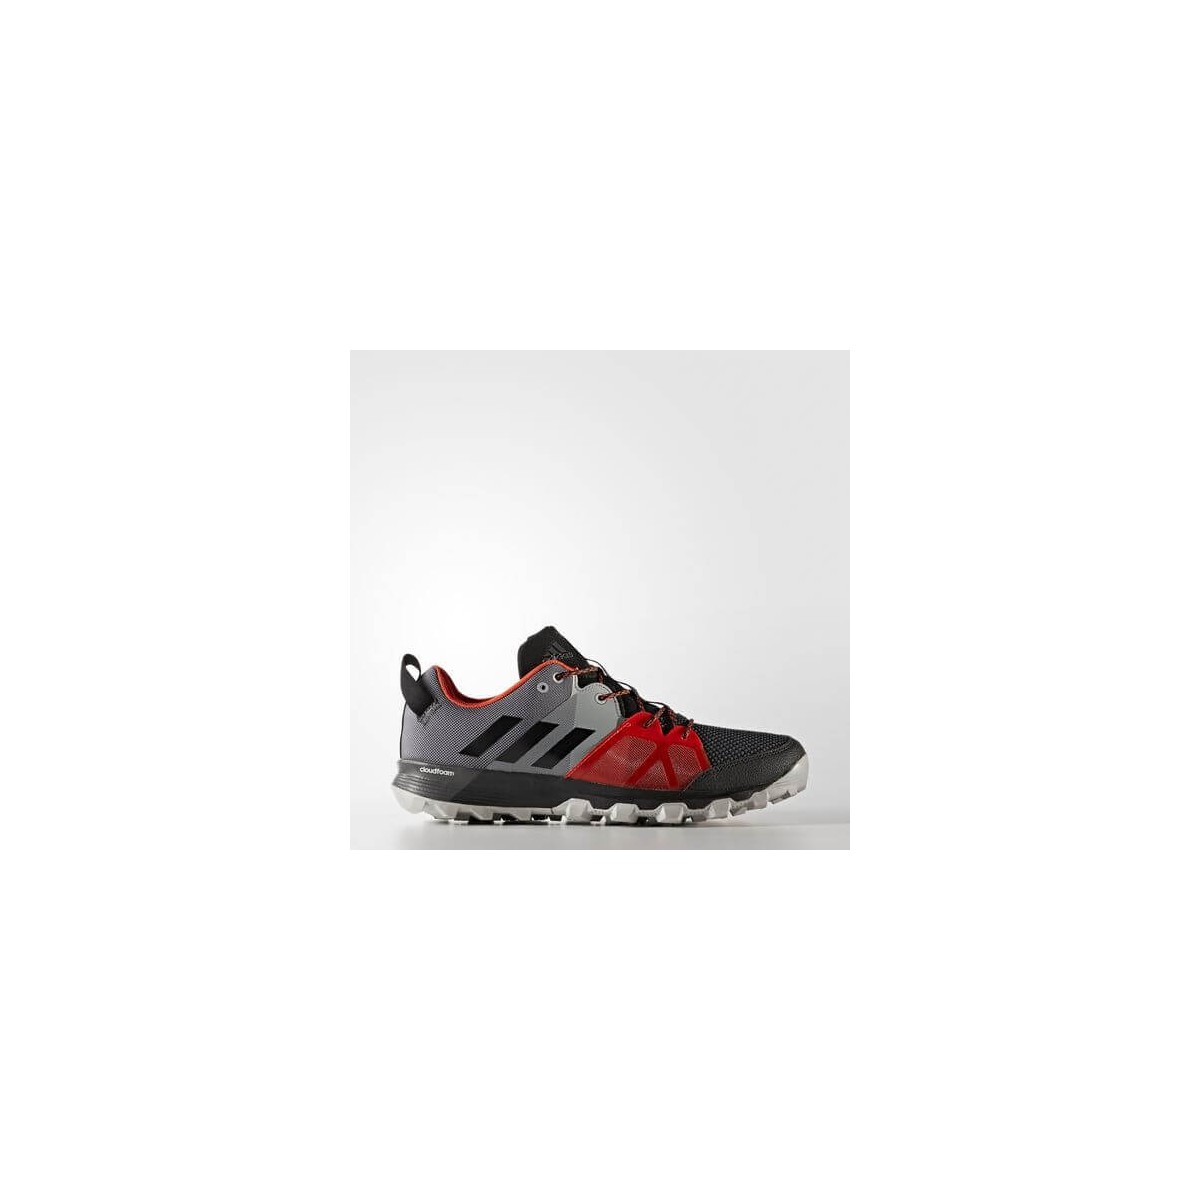 Zapatillas Kanadia 8.1 Trail Running negro/rojo - Hombre